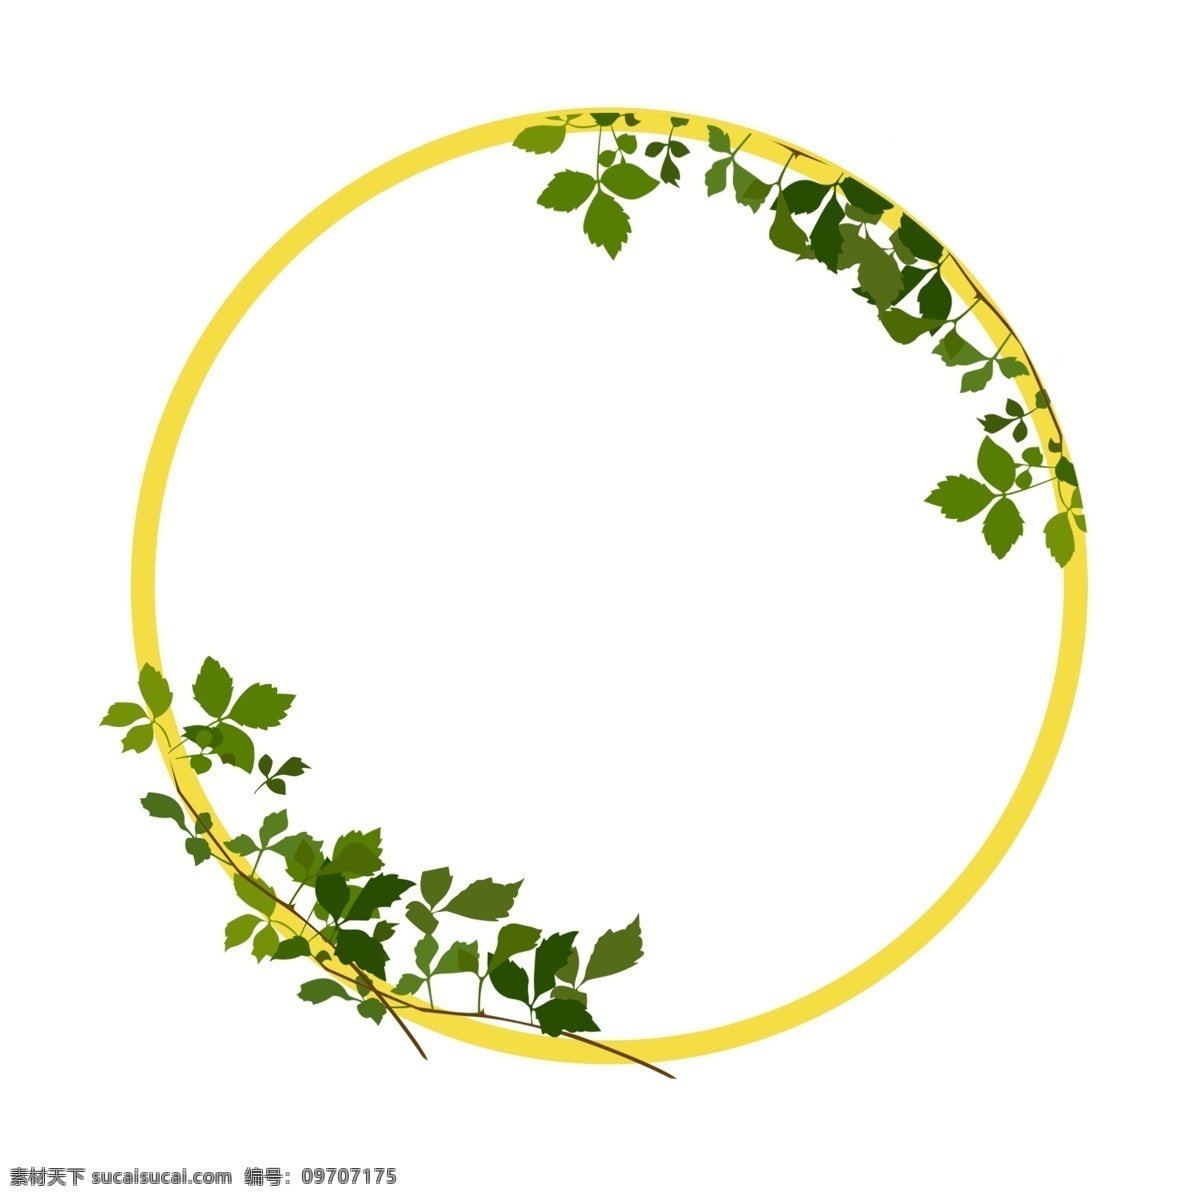 黄色 圆形 植物 边框 黄色边框 圆形边框 树枝 植物边框 绿叶叶子 绿叶装饰 漂亮的边框 春天边框 边框装饰